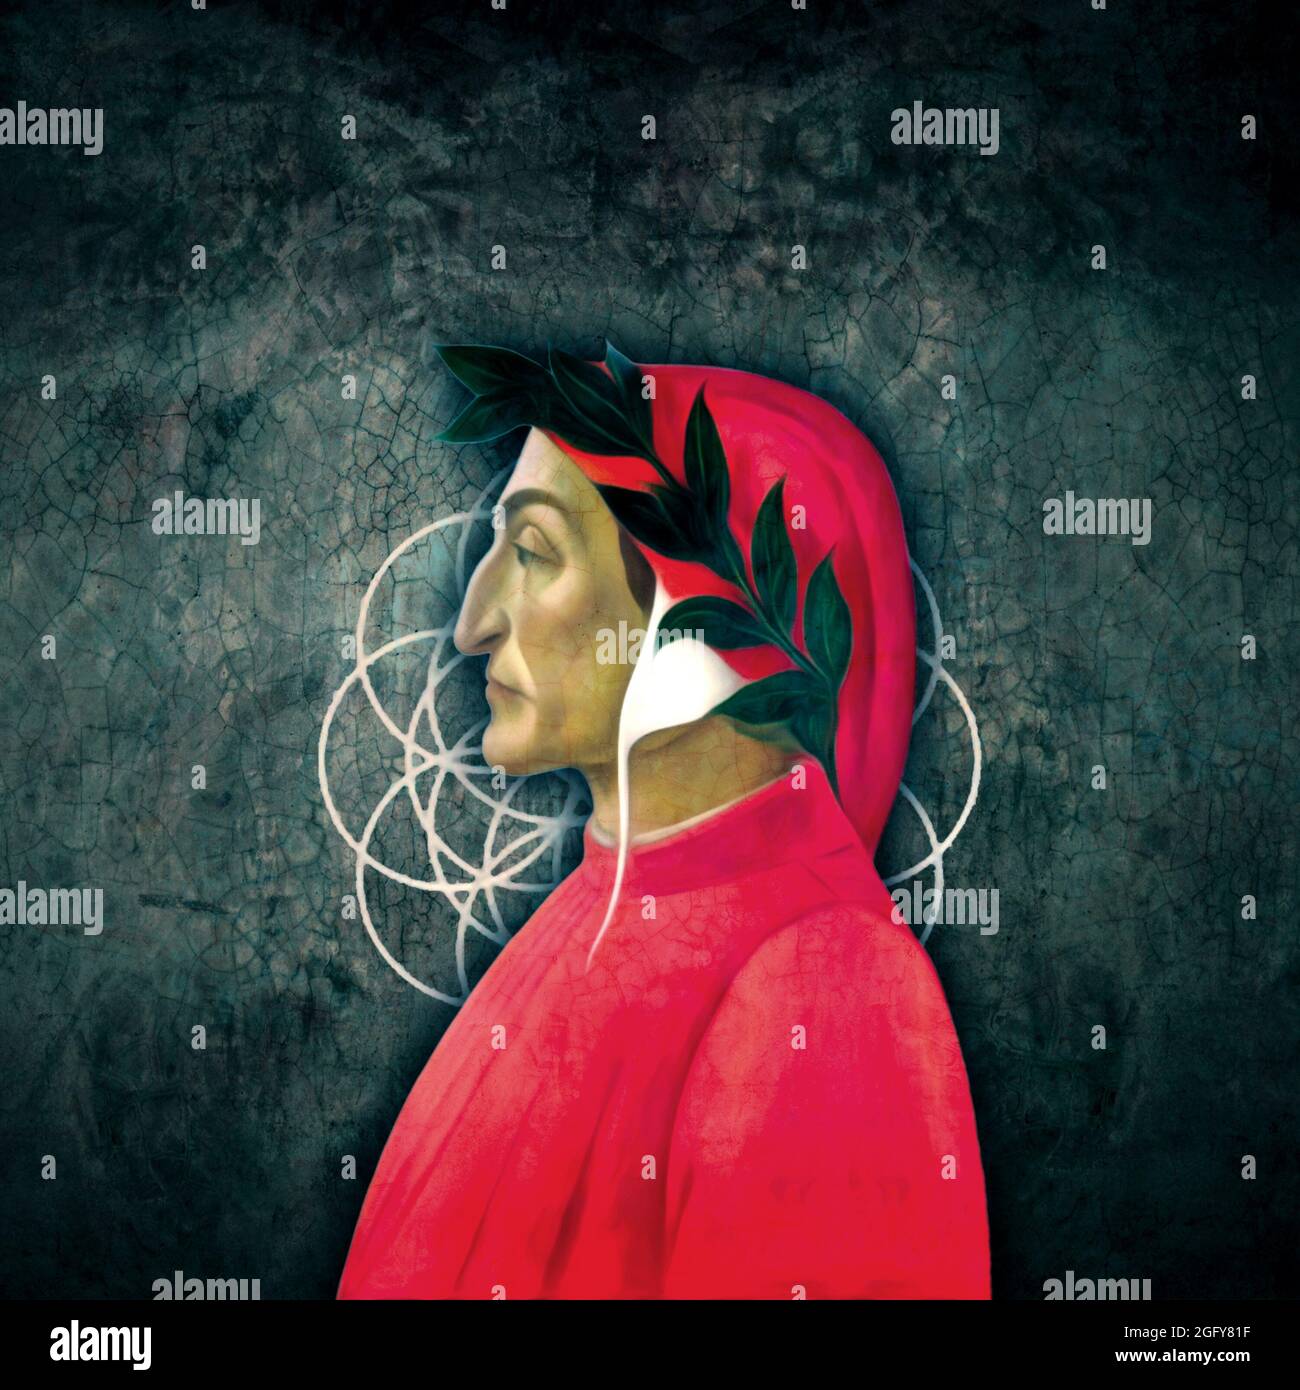 Dante Alighieri Profilillustration auf abstrakt geometrischem und verwittertem Wandhintergrund Stockfoto